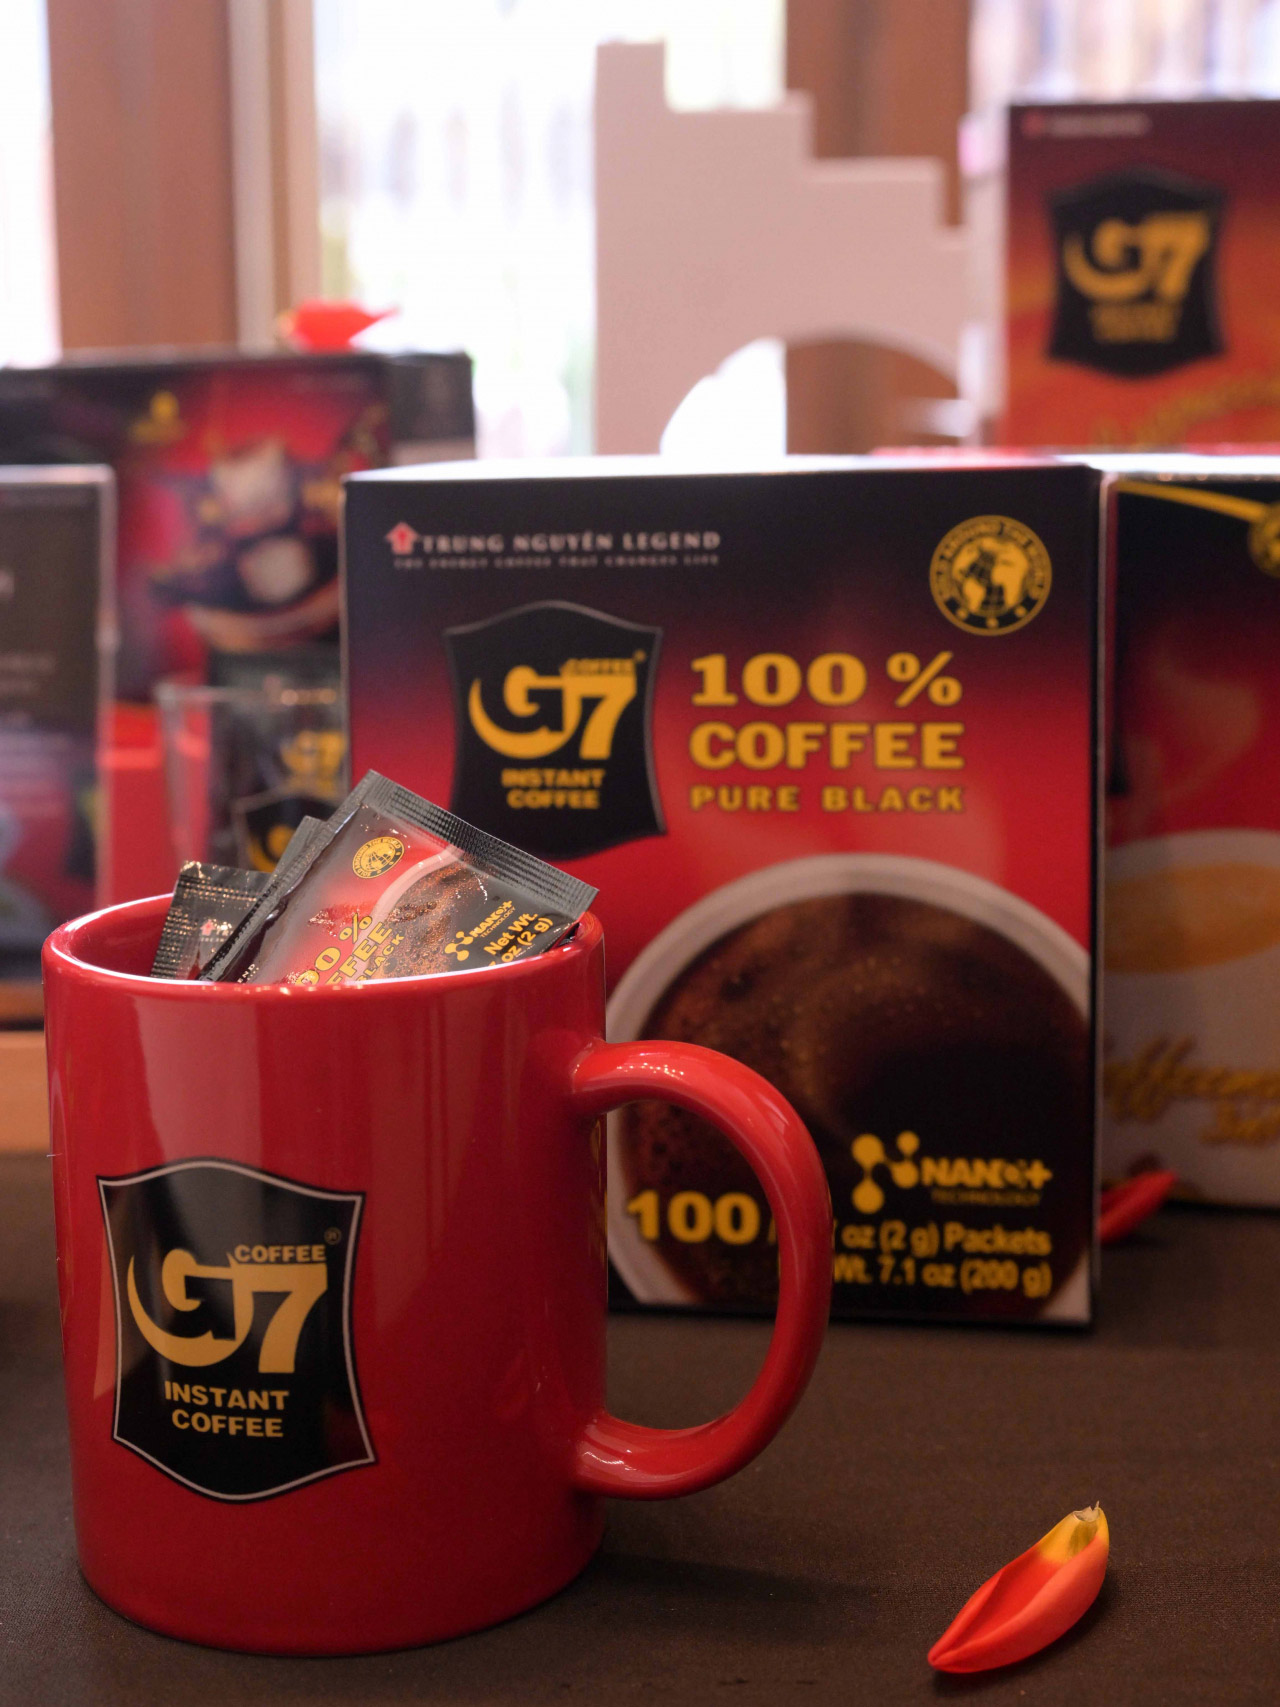 Tập đoàn Trung Nguyên Legend ứng dụng công nghệ hiện đại để giữ trọn vẹn hương vị đặc trưng, tươi ngon của cà phê Robusta Buôn Ma Thuột, để các sản phẩm cà phê Trung Nguyên, G7, Trung Nguyên Legend chinh phục được gu cà phê sành điệu của người Hàn Quốc và trên thế giới.